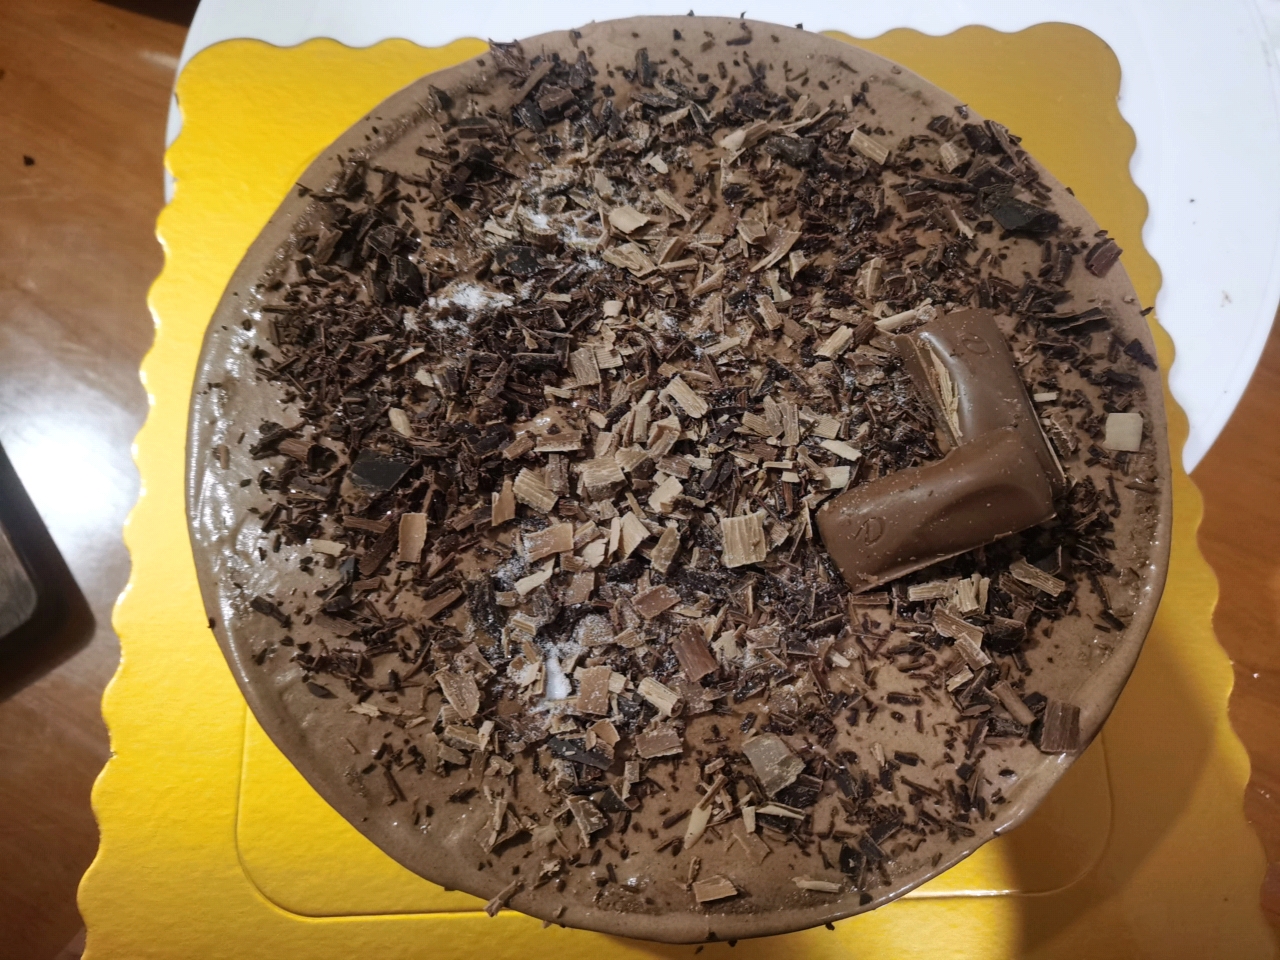 巧克力奶油蛋糕